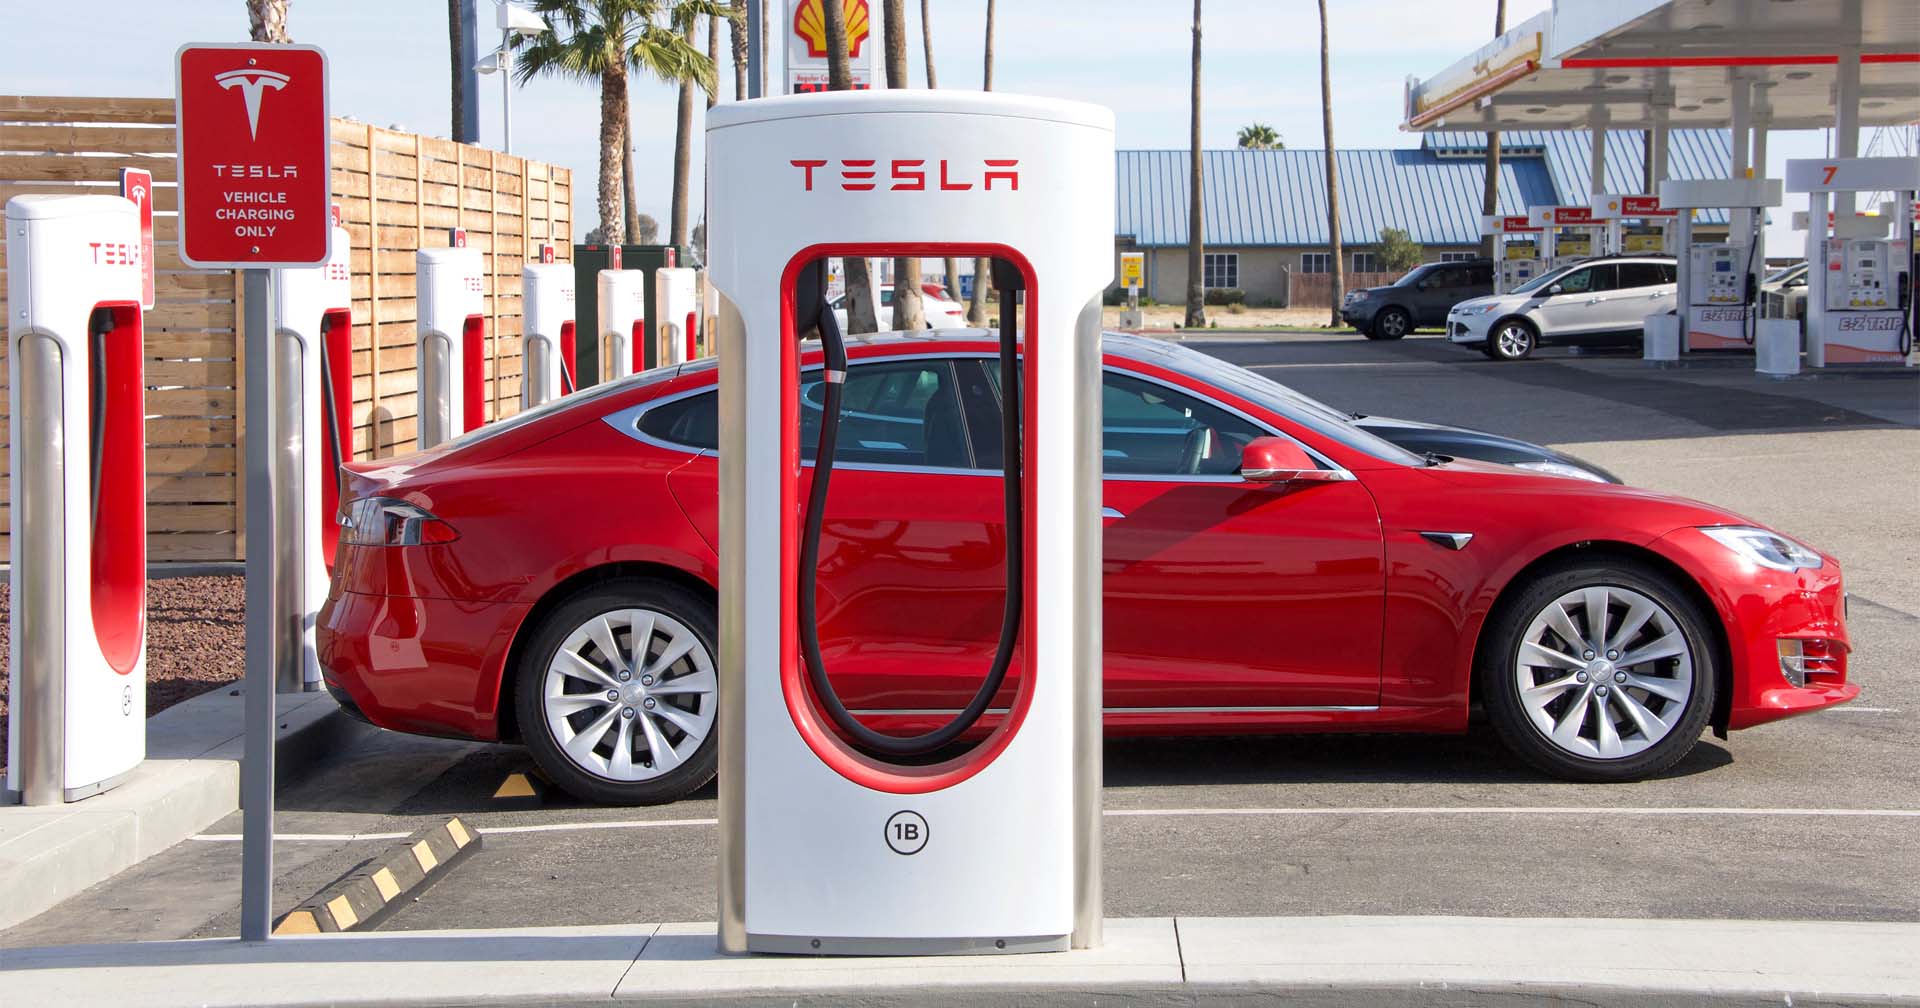 Tesla ปรับขึ้นราคารถยนต์ Model S, X และ Y ในสหรัฐฯ